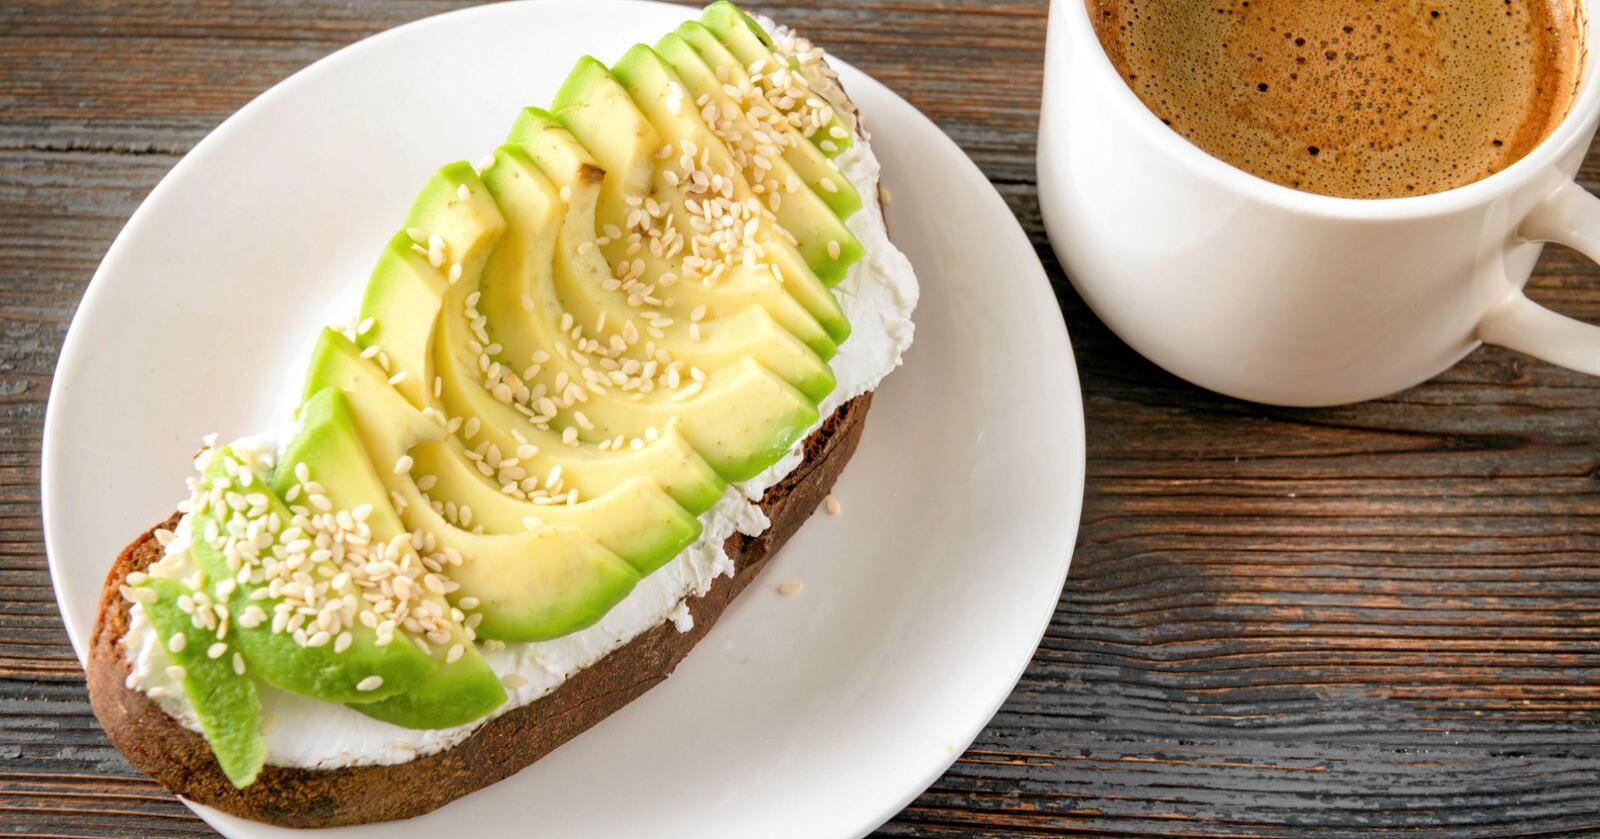 Eksotiske matvarer som  avocado og kaffe er under press, mener kronikkforfatteren. Foto: Mostphotos